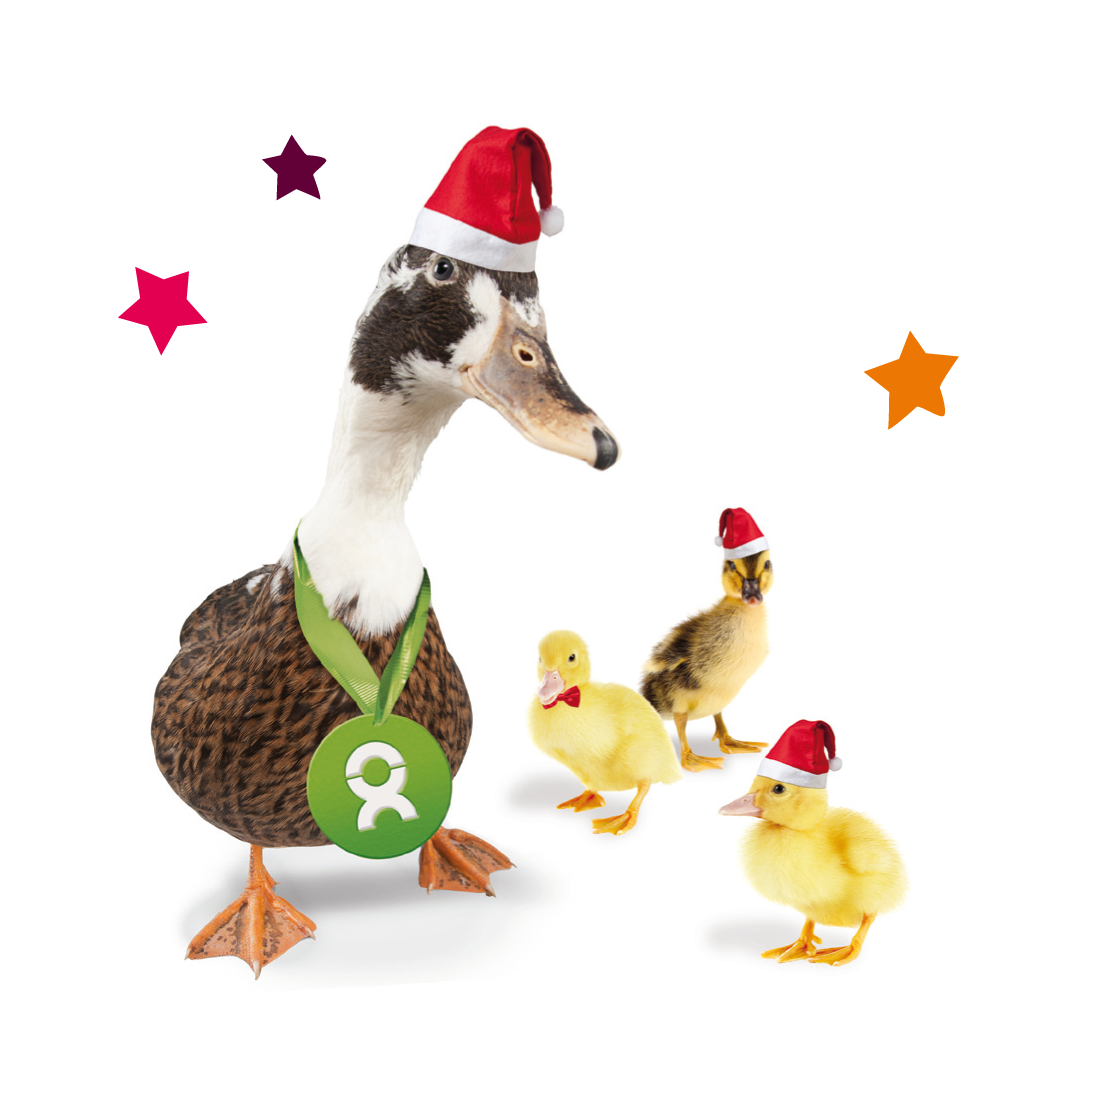 Beispiel Geschenk Spende zu Weihnachten: Eine Ente mit drei Küken und weihnachtlichen Motiven